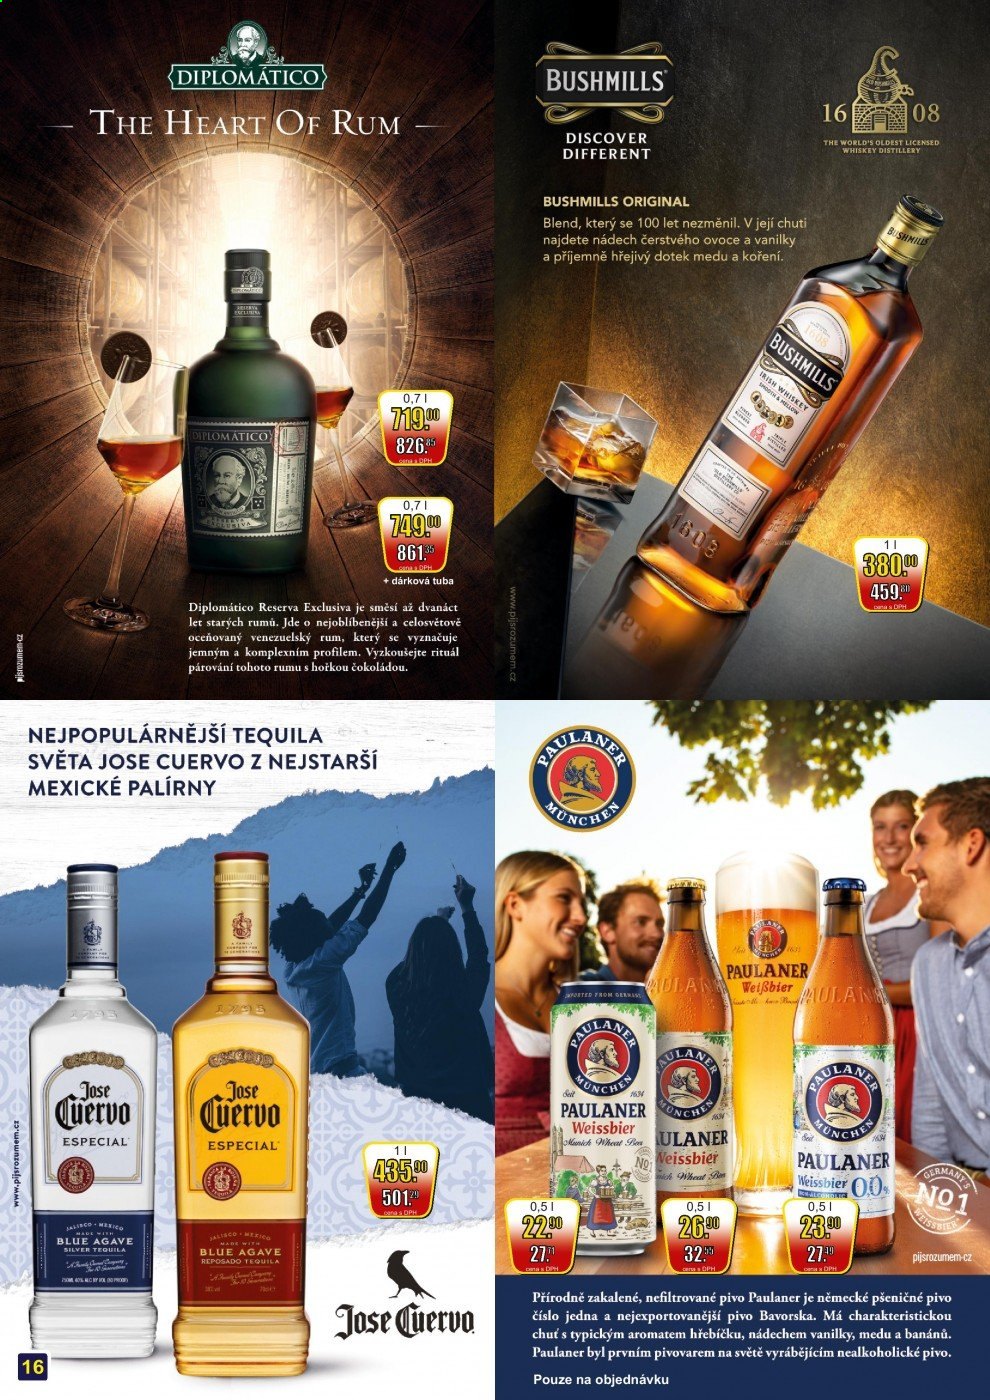 thumbnail - Leták Adam velkoobchod Šternberk - 1.6.2021 - 30.6.2021 - Produkty v akci - nealkoholický nápoj, pšeničné pivo, pivo, nealkoholické pivo, Paulaner, rum, whisky, Diplomático, Bushmills. Strana 16.